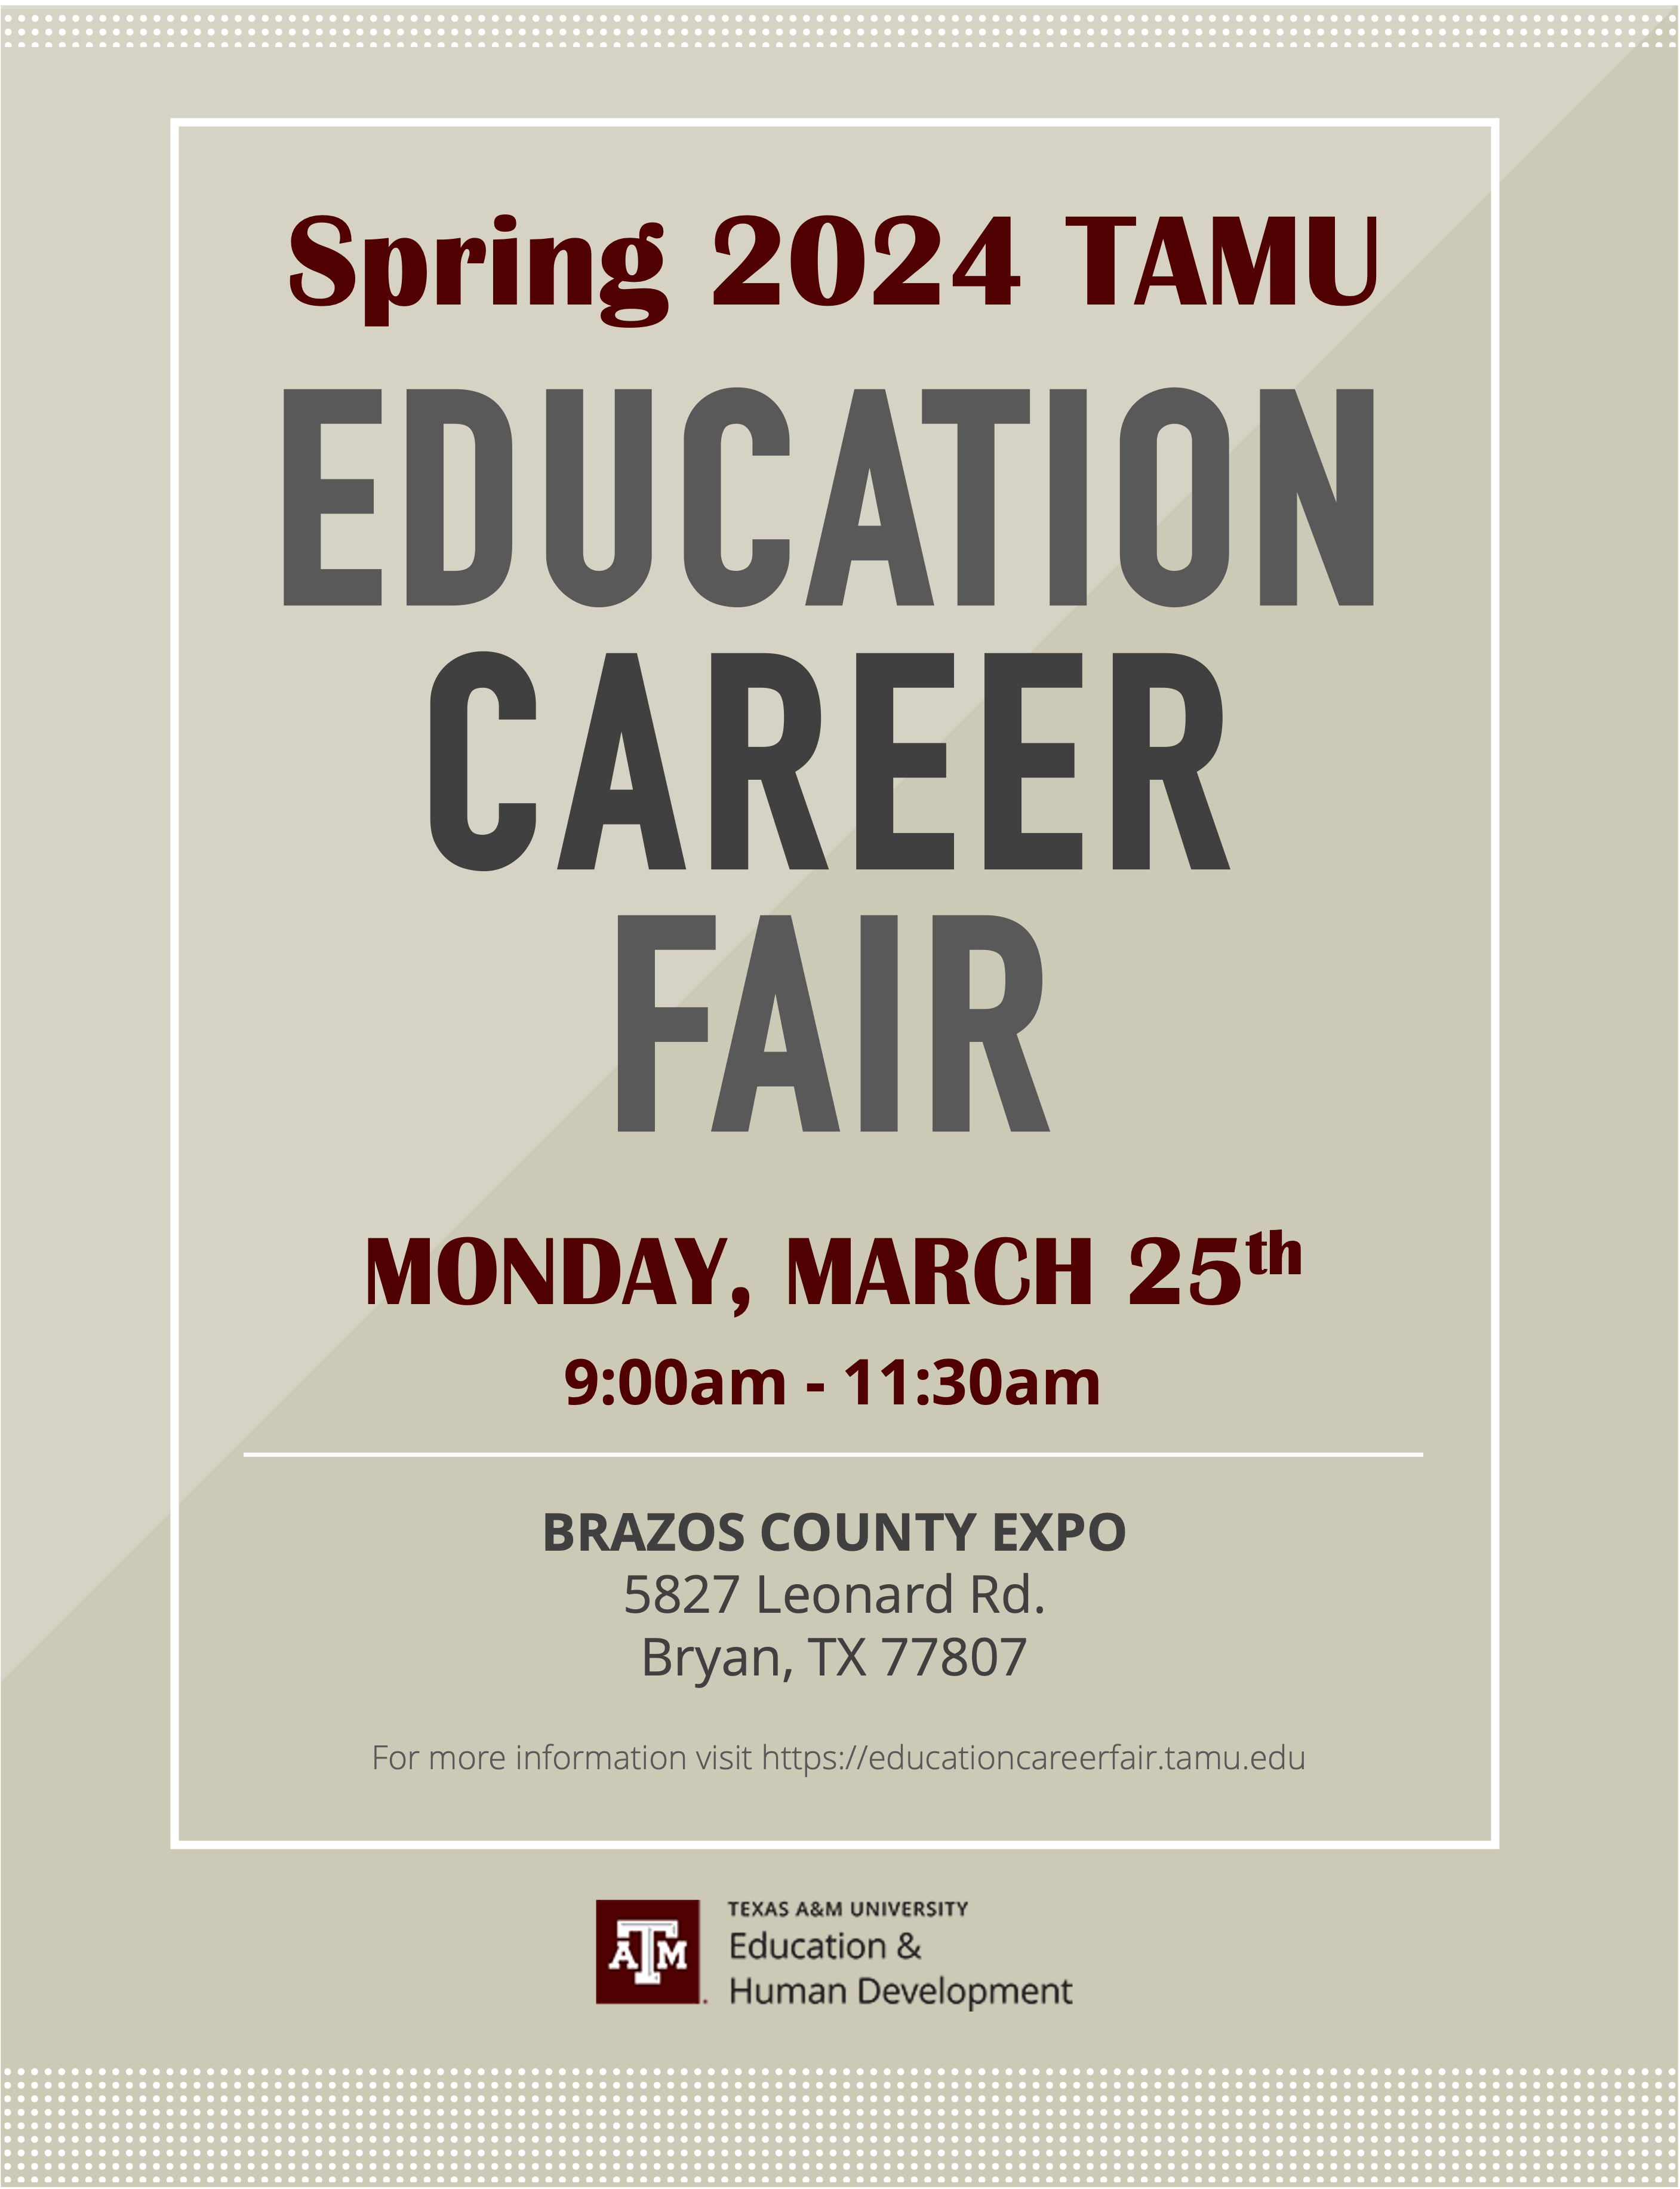 Spring 2024 TAMU Education Career Fair